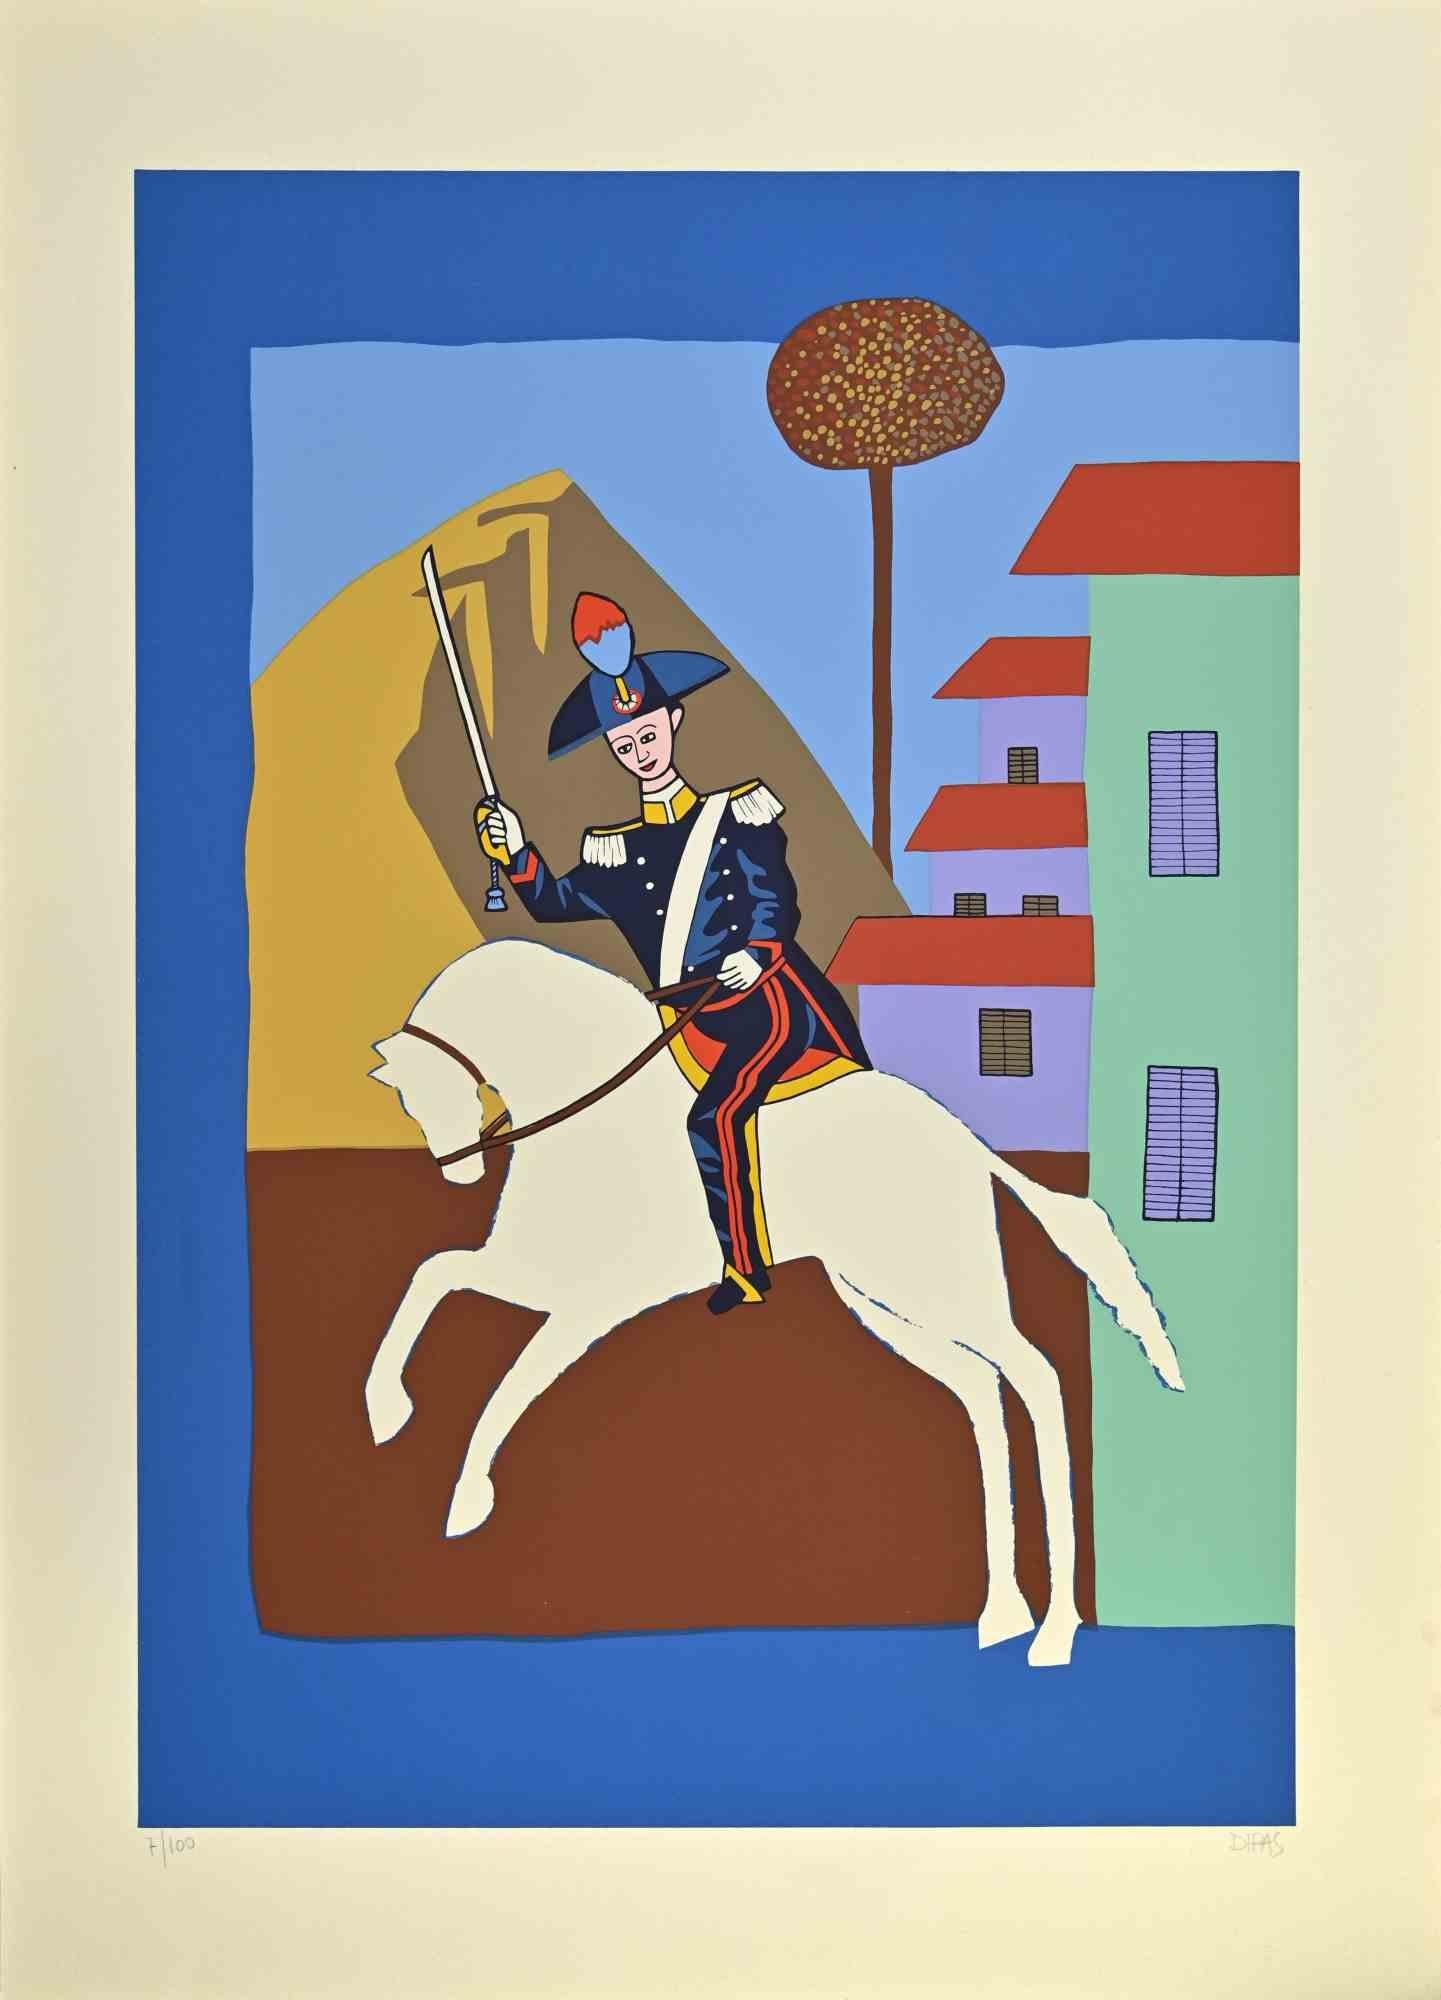 Carabinier Riding Horse est une œuvre d'art contemporain réalisée par l'artiste Dipas dans les années 1970.

Sérigraphie de couleurs mélangées.

Signé à la main dans la marge inférieure droite.

Numéroté dans la marge inférieure gauche.

Édition de